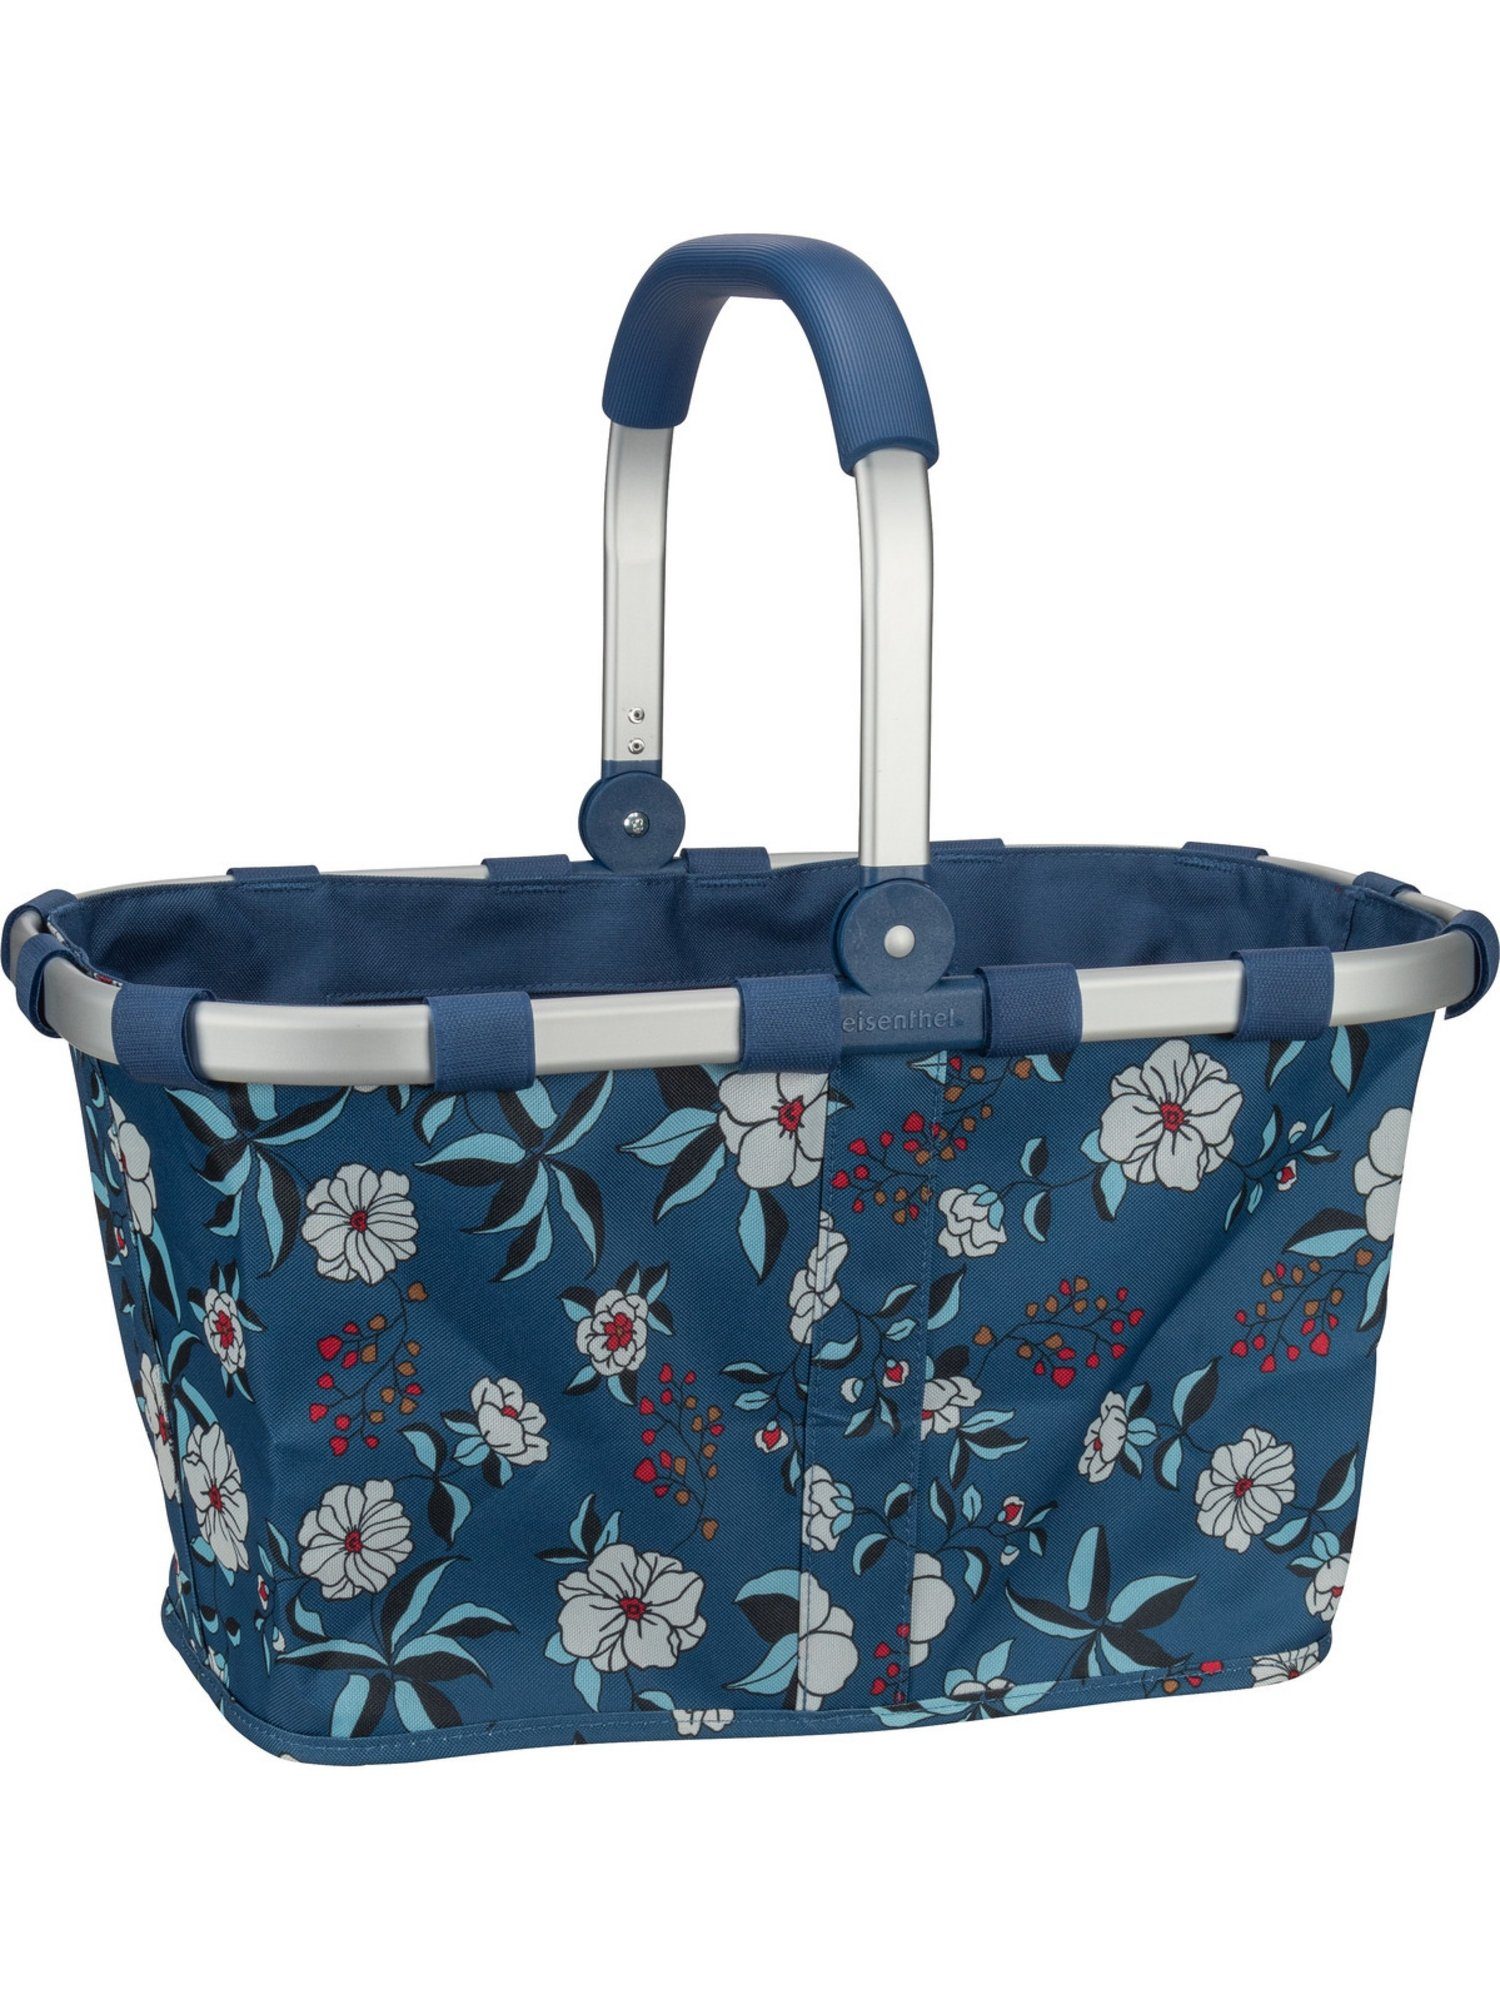 l carrybag, Blue 22 Einkaufsbeutel Garden REISENTHEL®